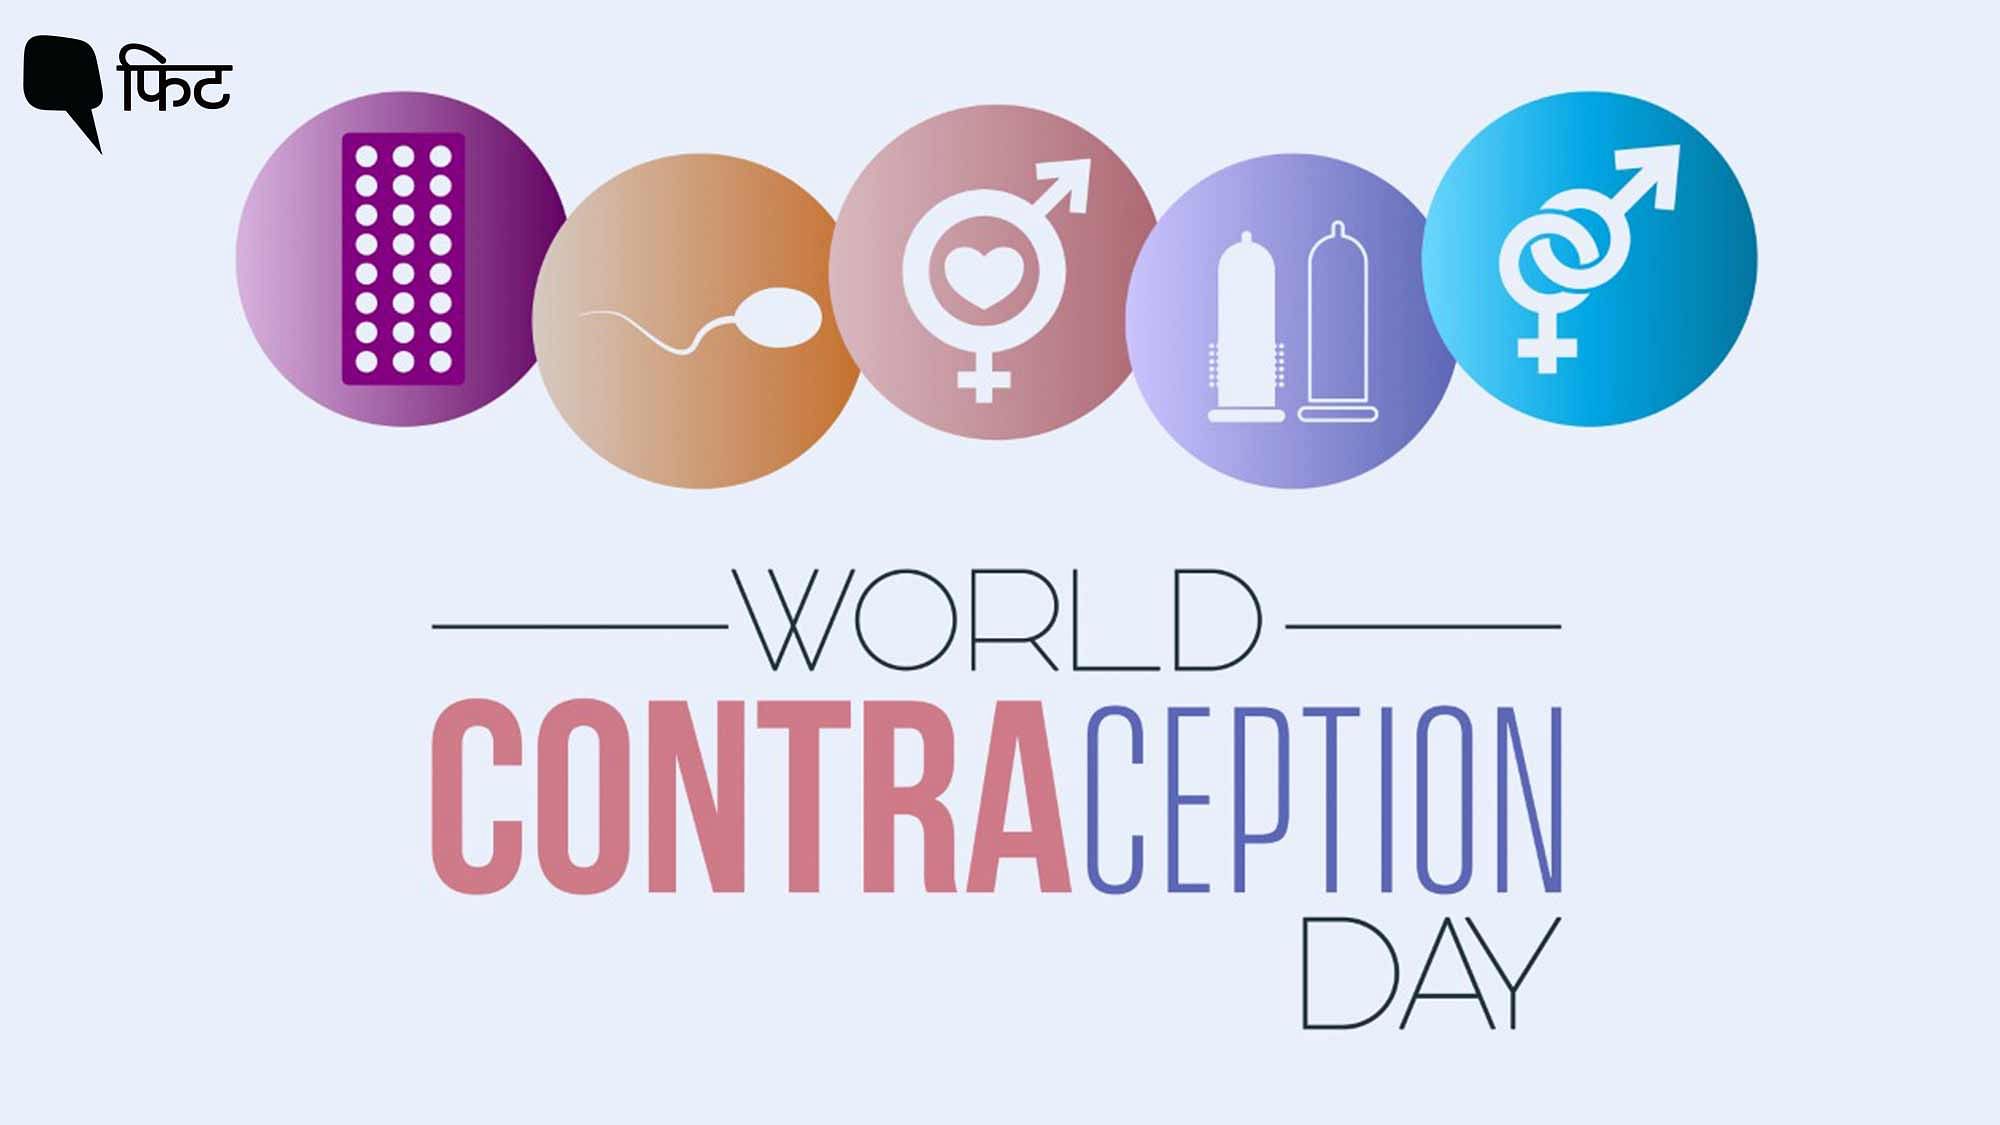 <div class="paragraphs"><p>विश्व गर्भनिरोध दिवस जागरूक करता है&nbsp;कॉन्ट्रासेप्शन के तरीकों और उसके सही इस्तेमाल के बारे में</p></div>